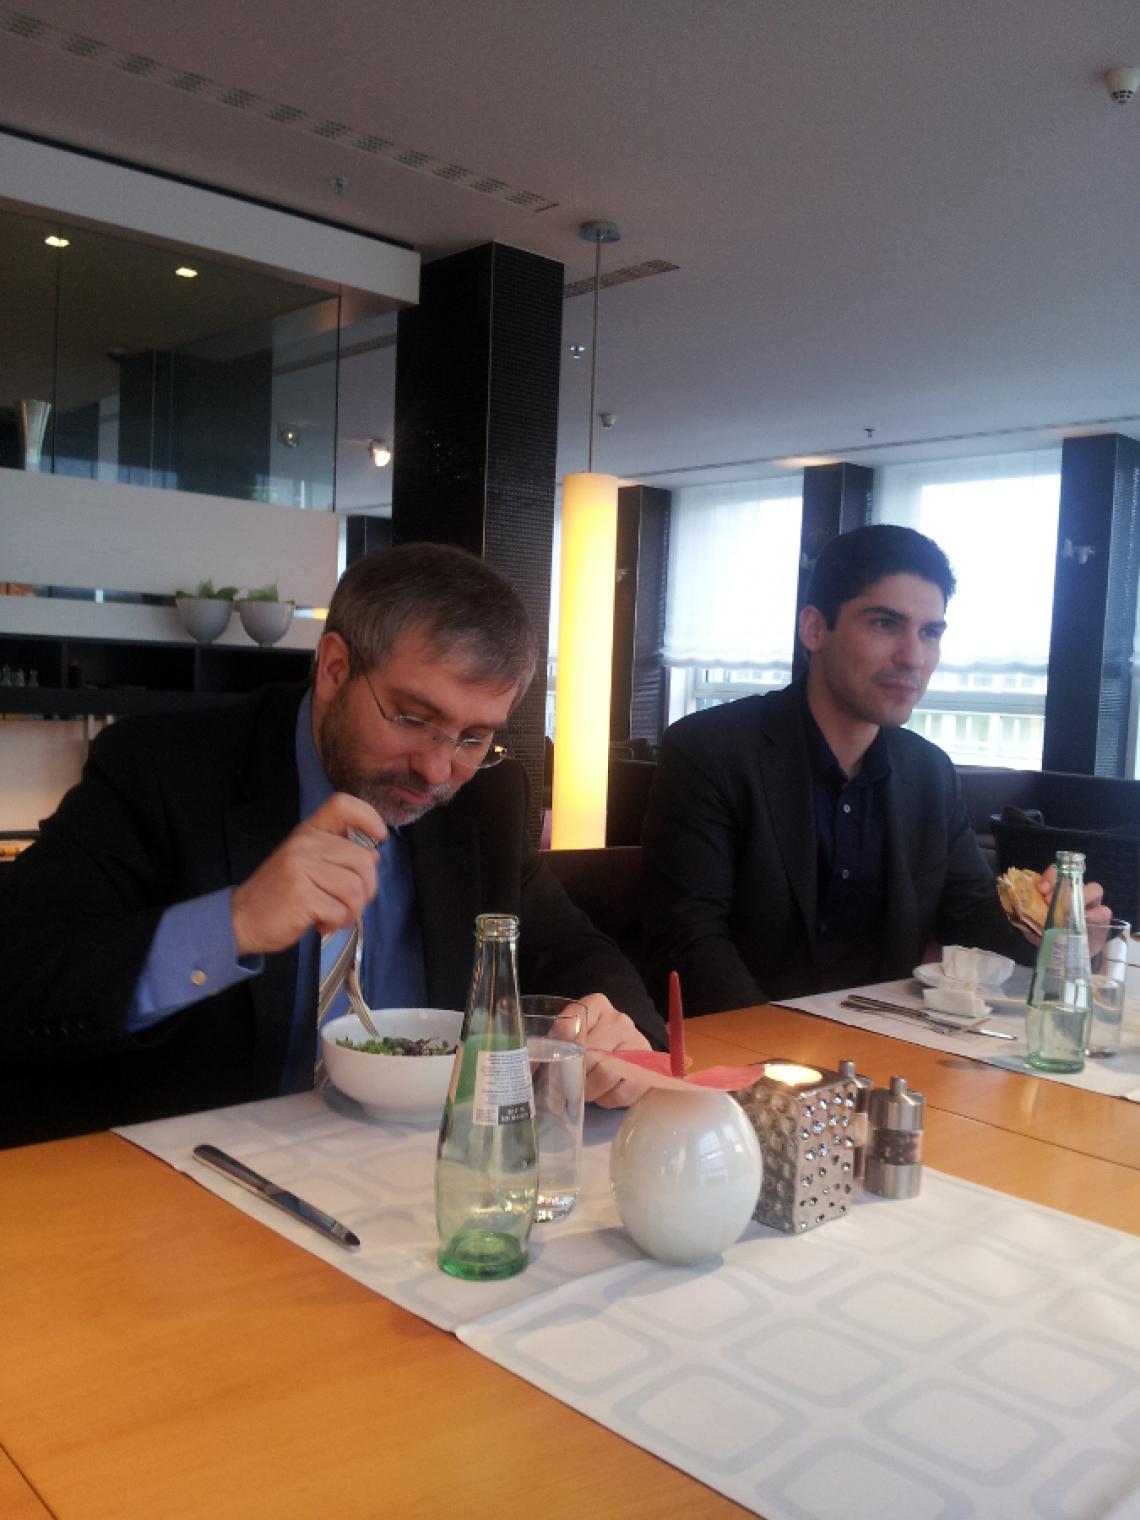 eID ePassport Conference Program Committee meeting in Berlin